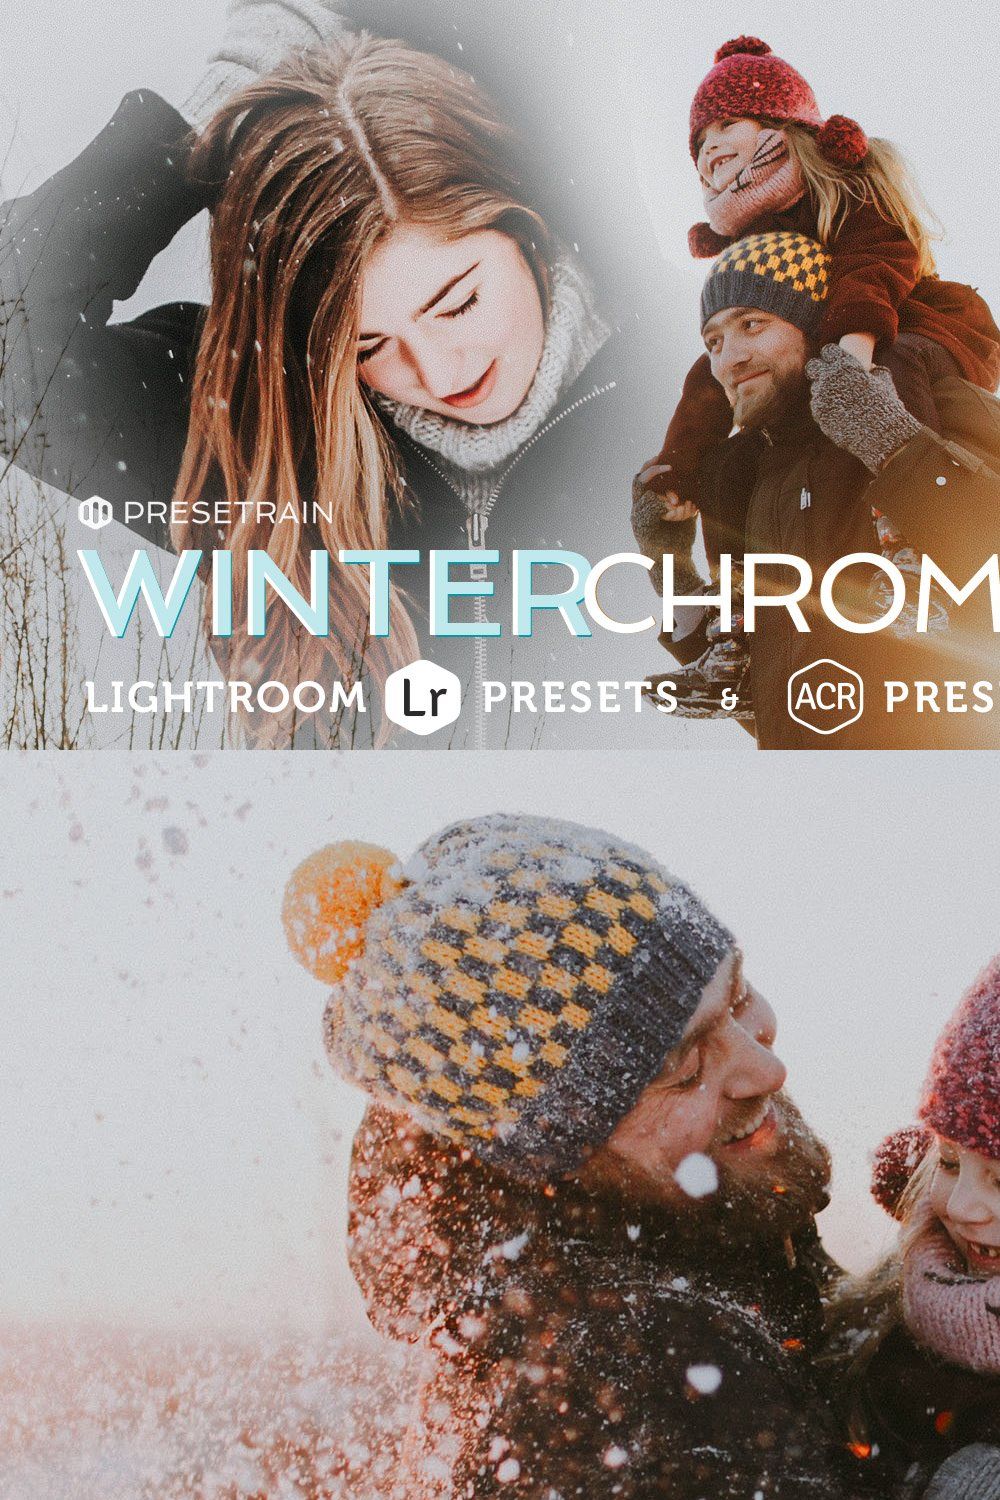 Winterchrome Presets for LR & ACR pinterest preview image.